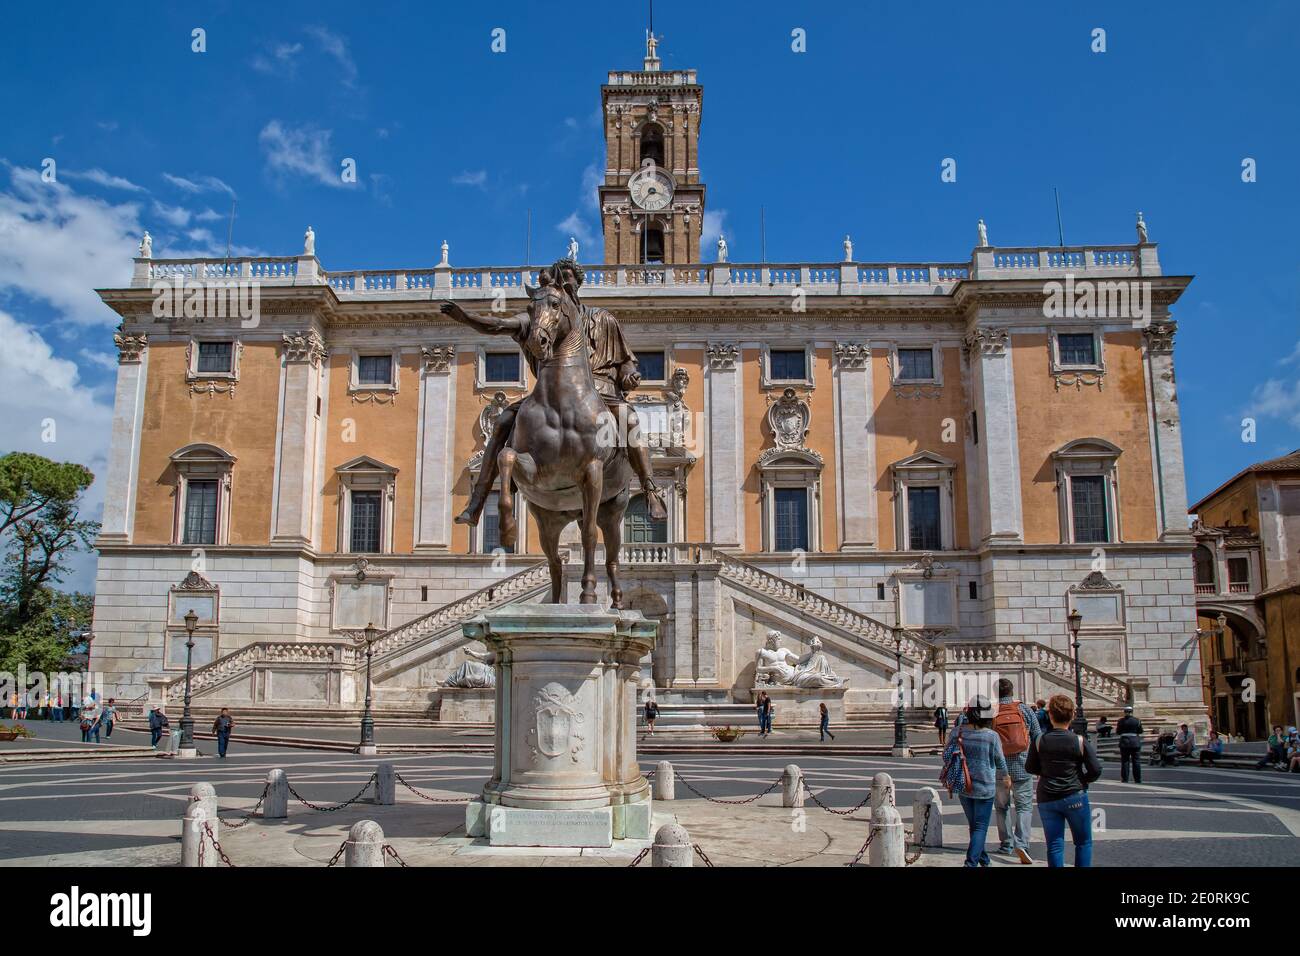 Estatua de bronce del emperador romano Marcus Aurelius.visita turística al Palacio Senatorial en la Colina Capitolina (Piazza del Campidoglio) en Roma, Italia Foto de stock